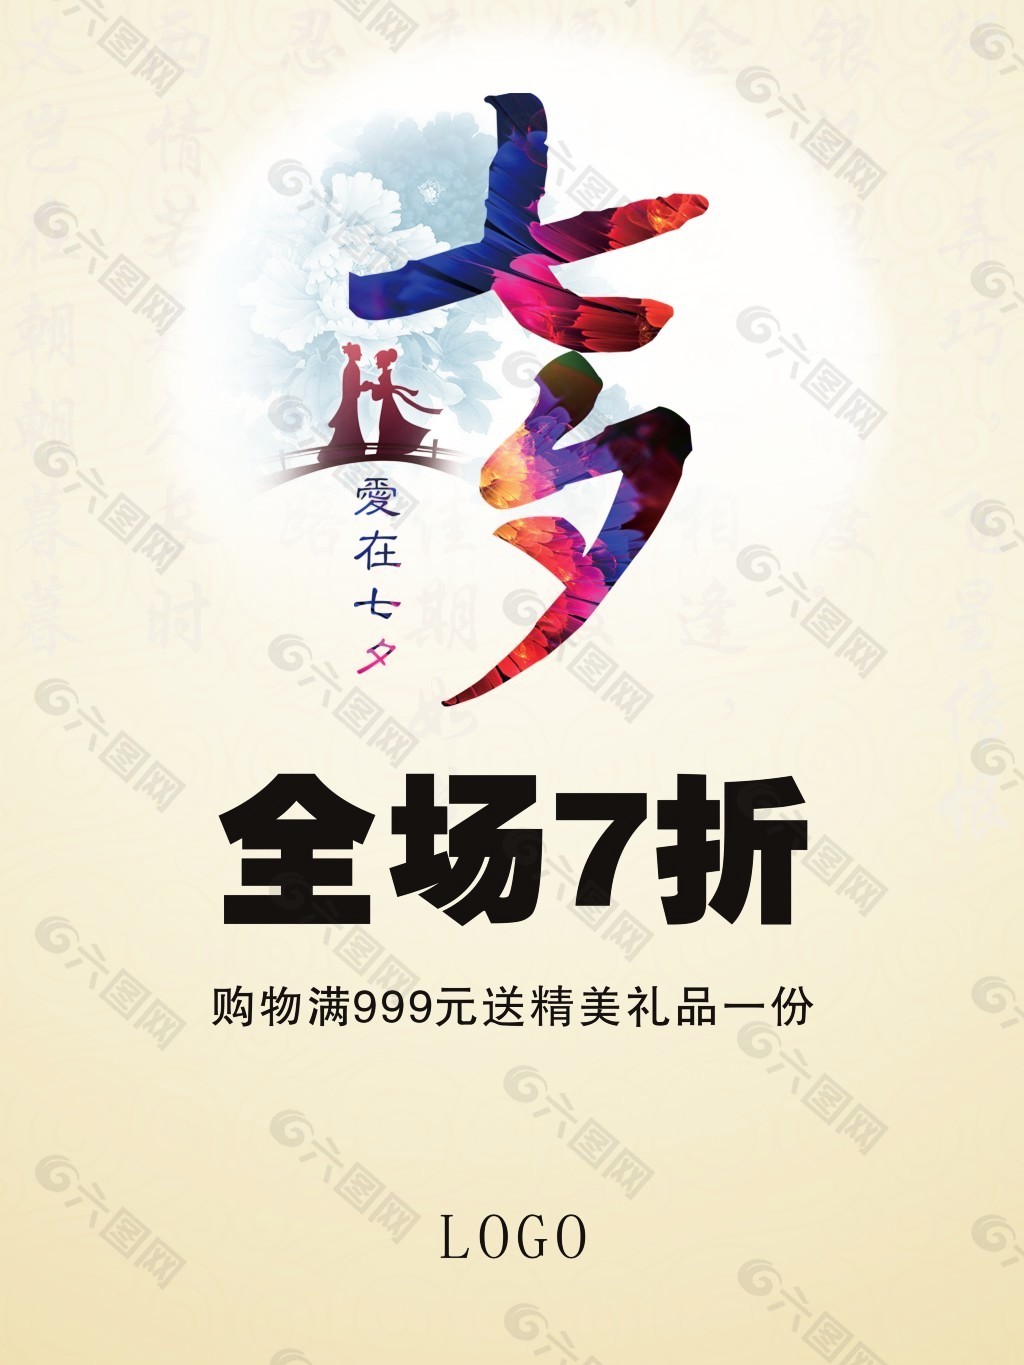 七夕节 商场促销海报 折扣设计元素素材免费下载(图片编号:5380860)